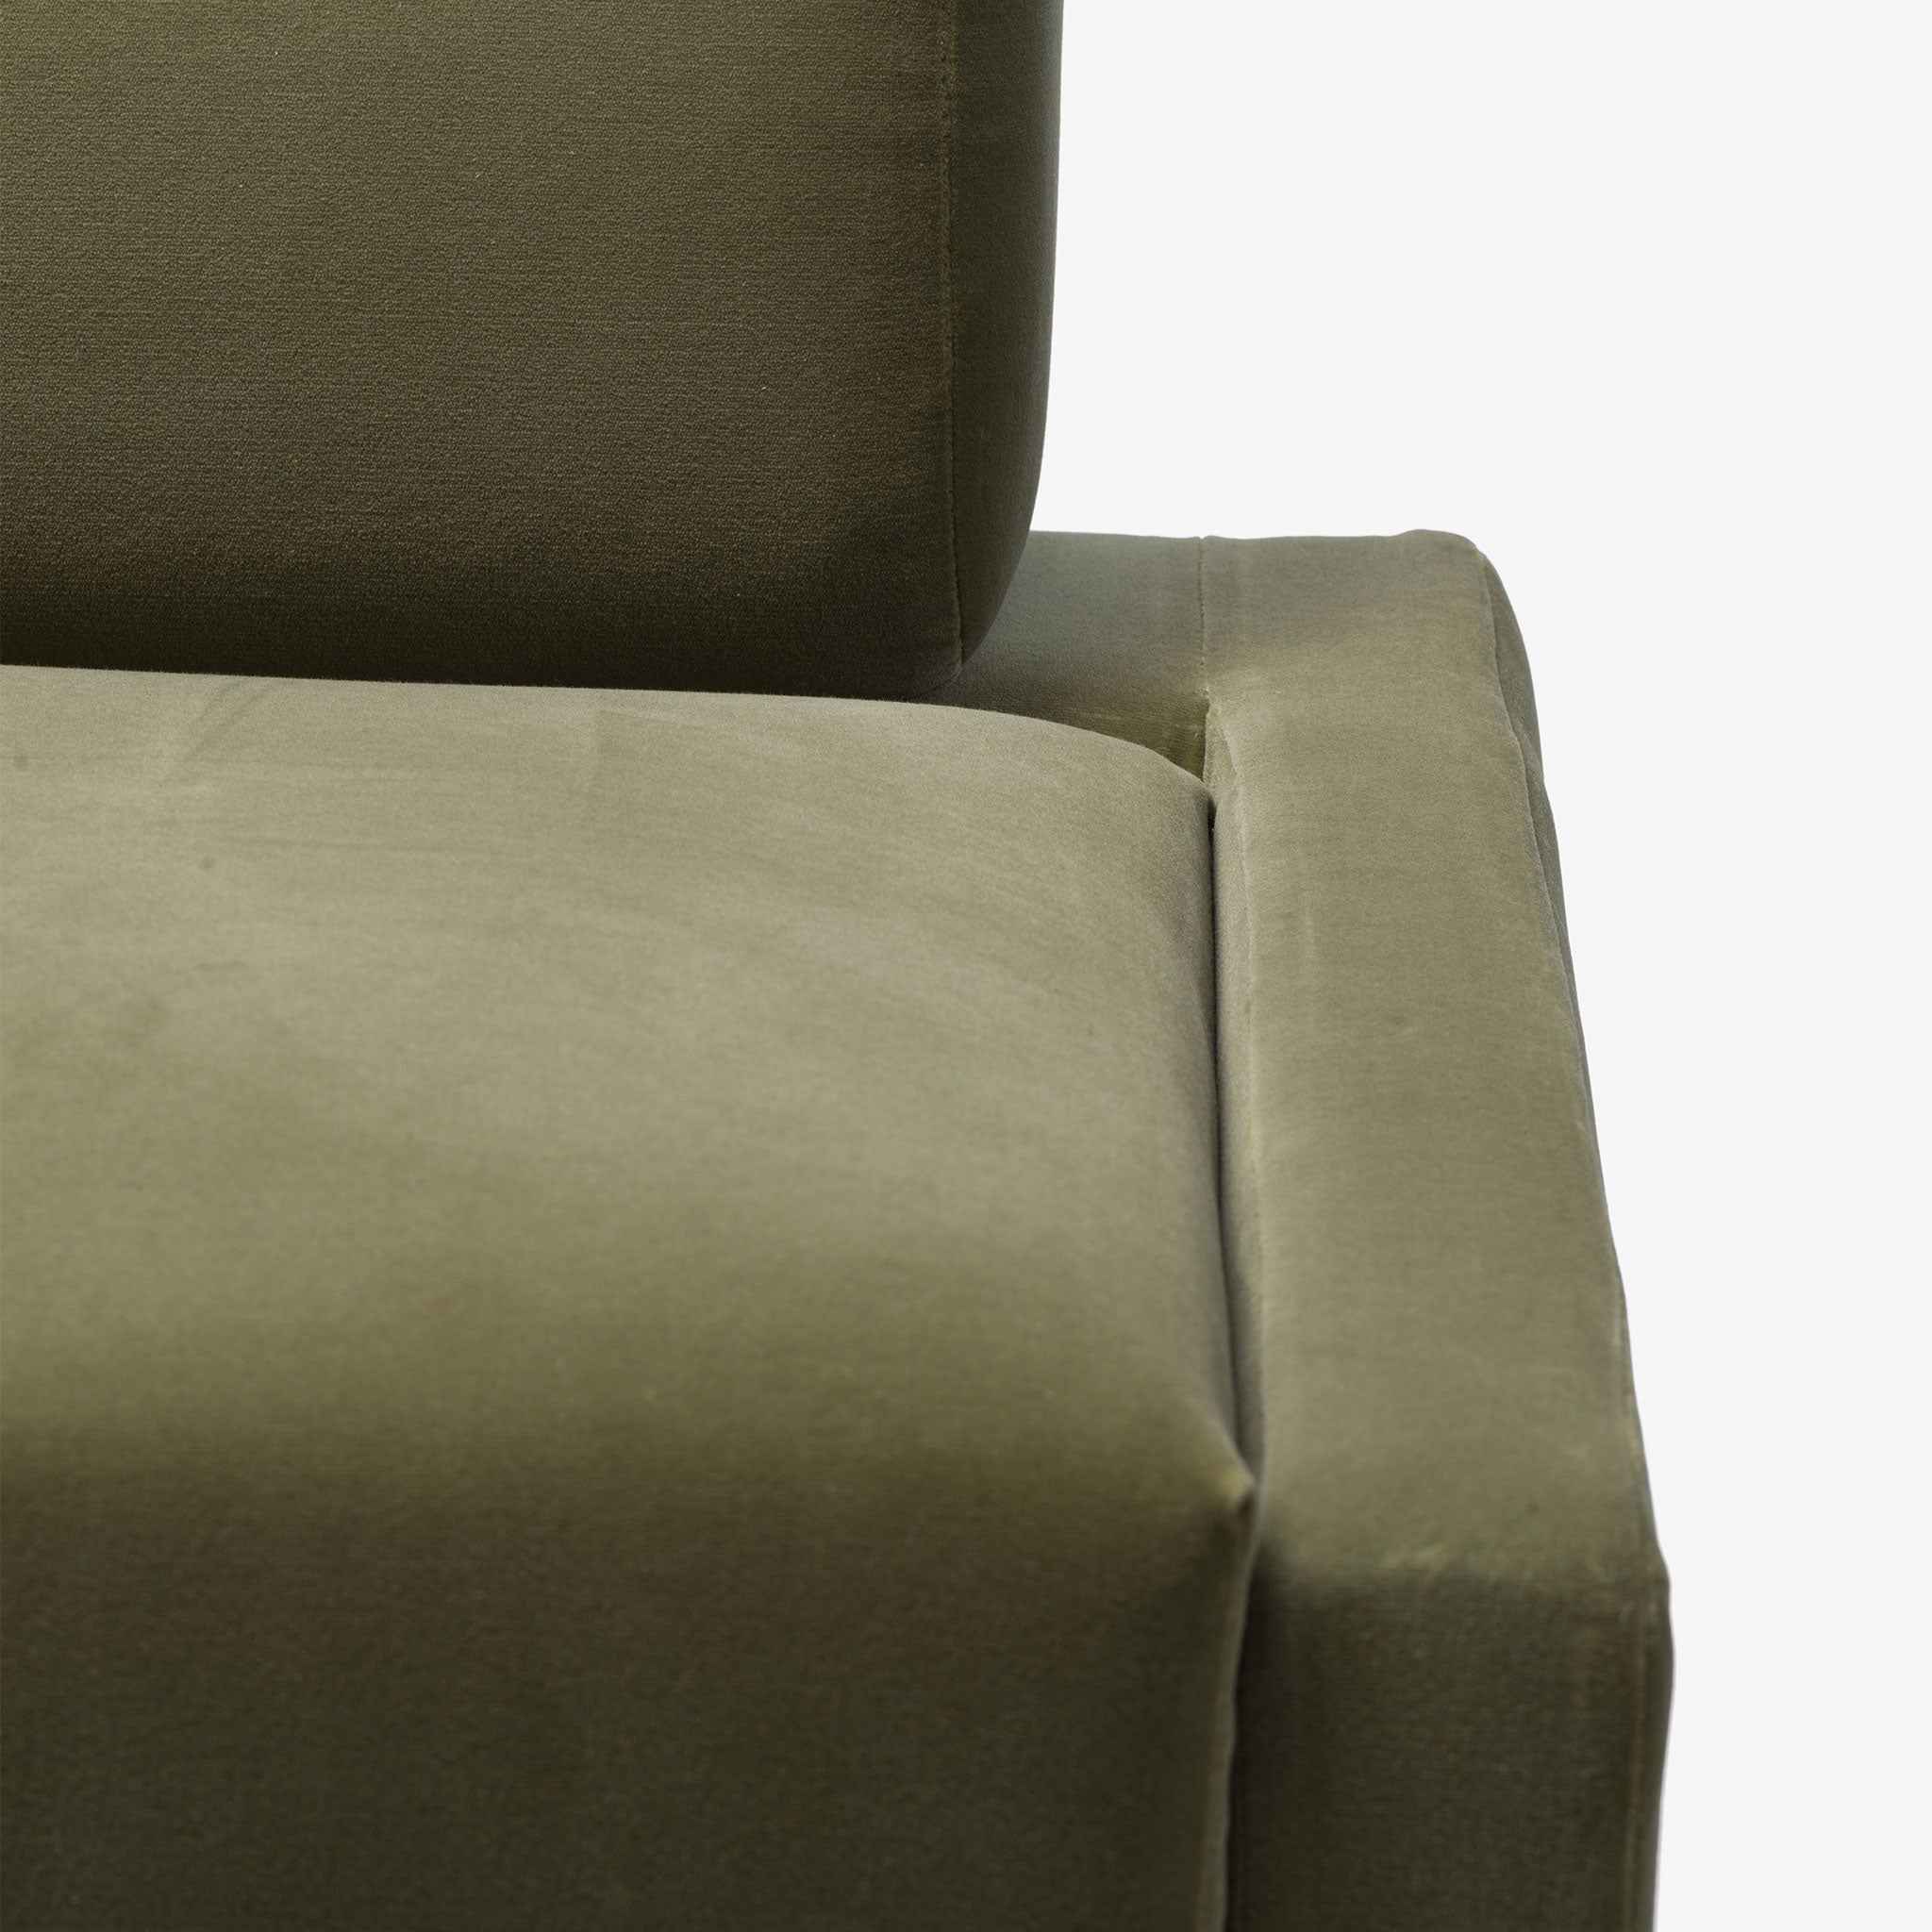 Luxury furniture, Velvet Bench, Backrest, Contemporary Design, Modern Design, Living Room, Bedroom